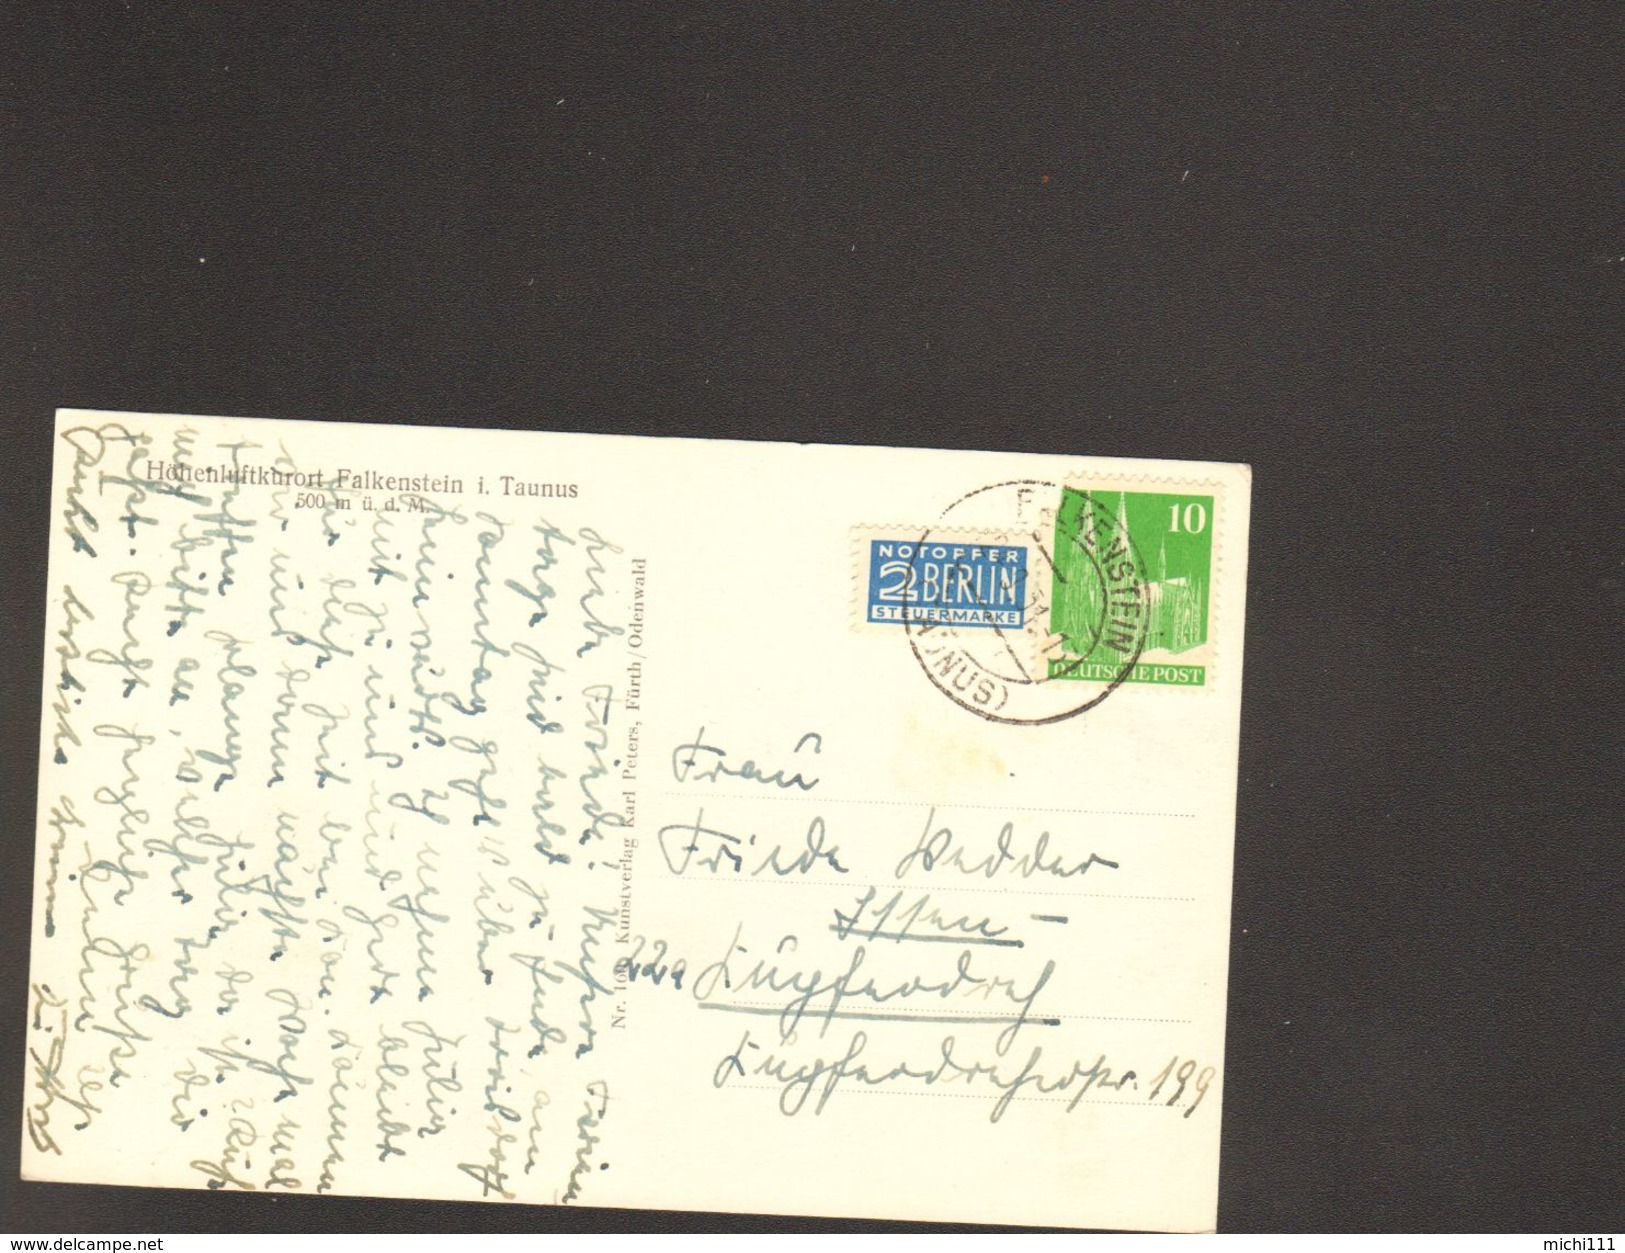 Ansichtskarte Von Falkenstein Taunus Gestempelt 1951 Mit 10 Pfg.Bauten Briefmarke Und Notopfer Marke - Koenigstein